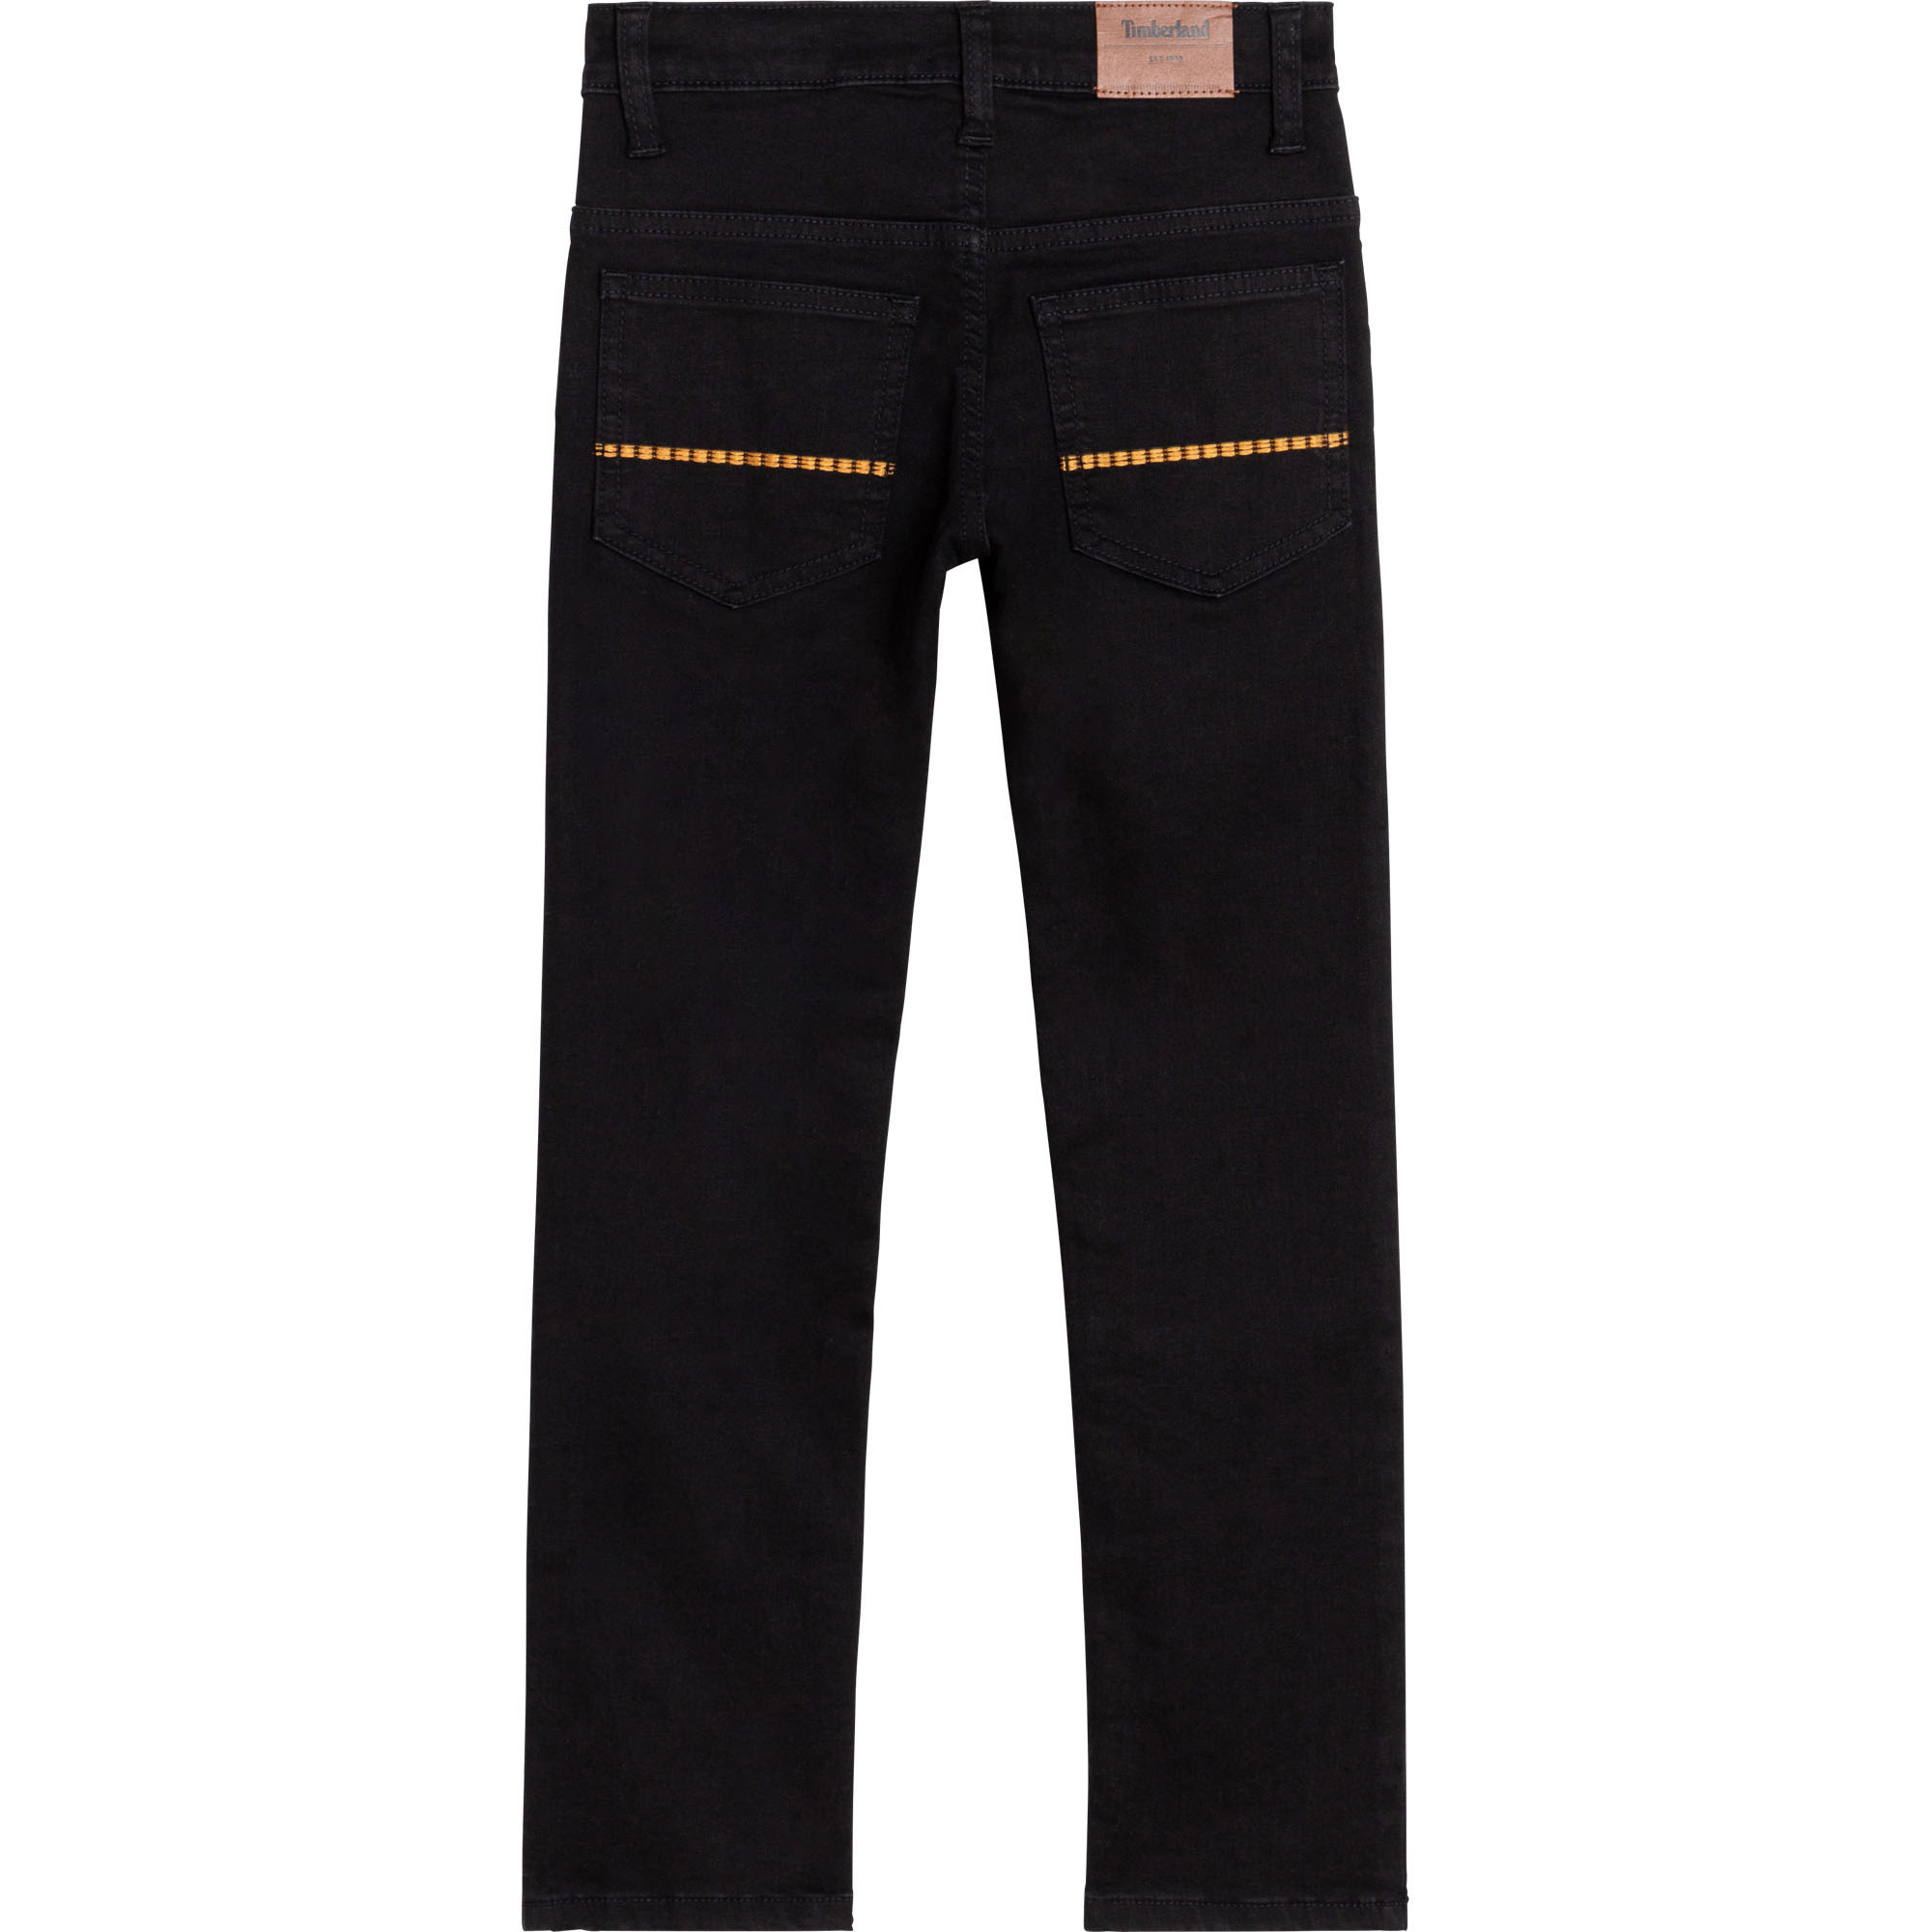 Slim Fit Jeans aus Stretch-Stoff TIMBERLAND Für JUNGE